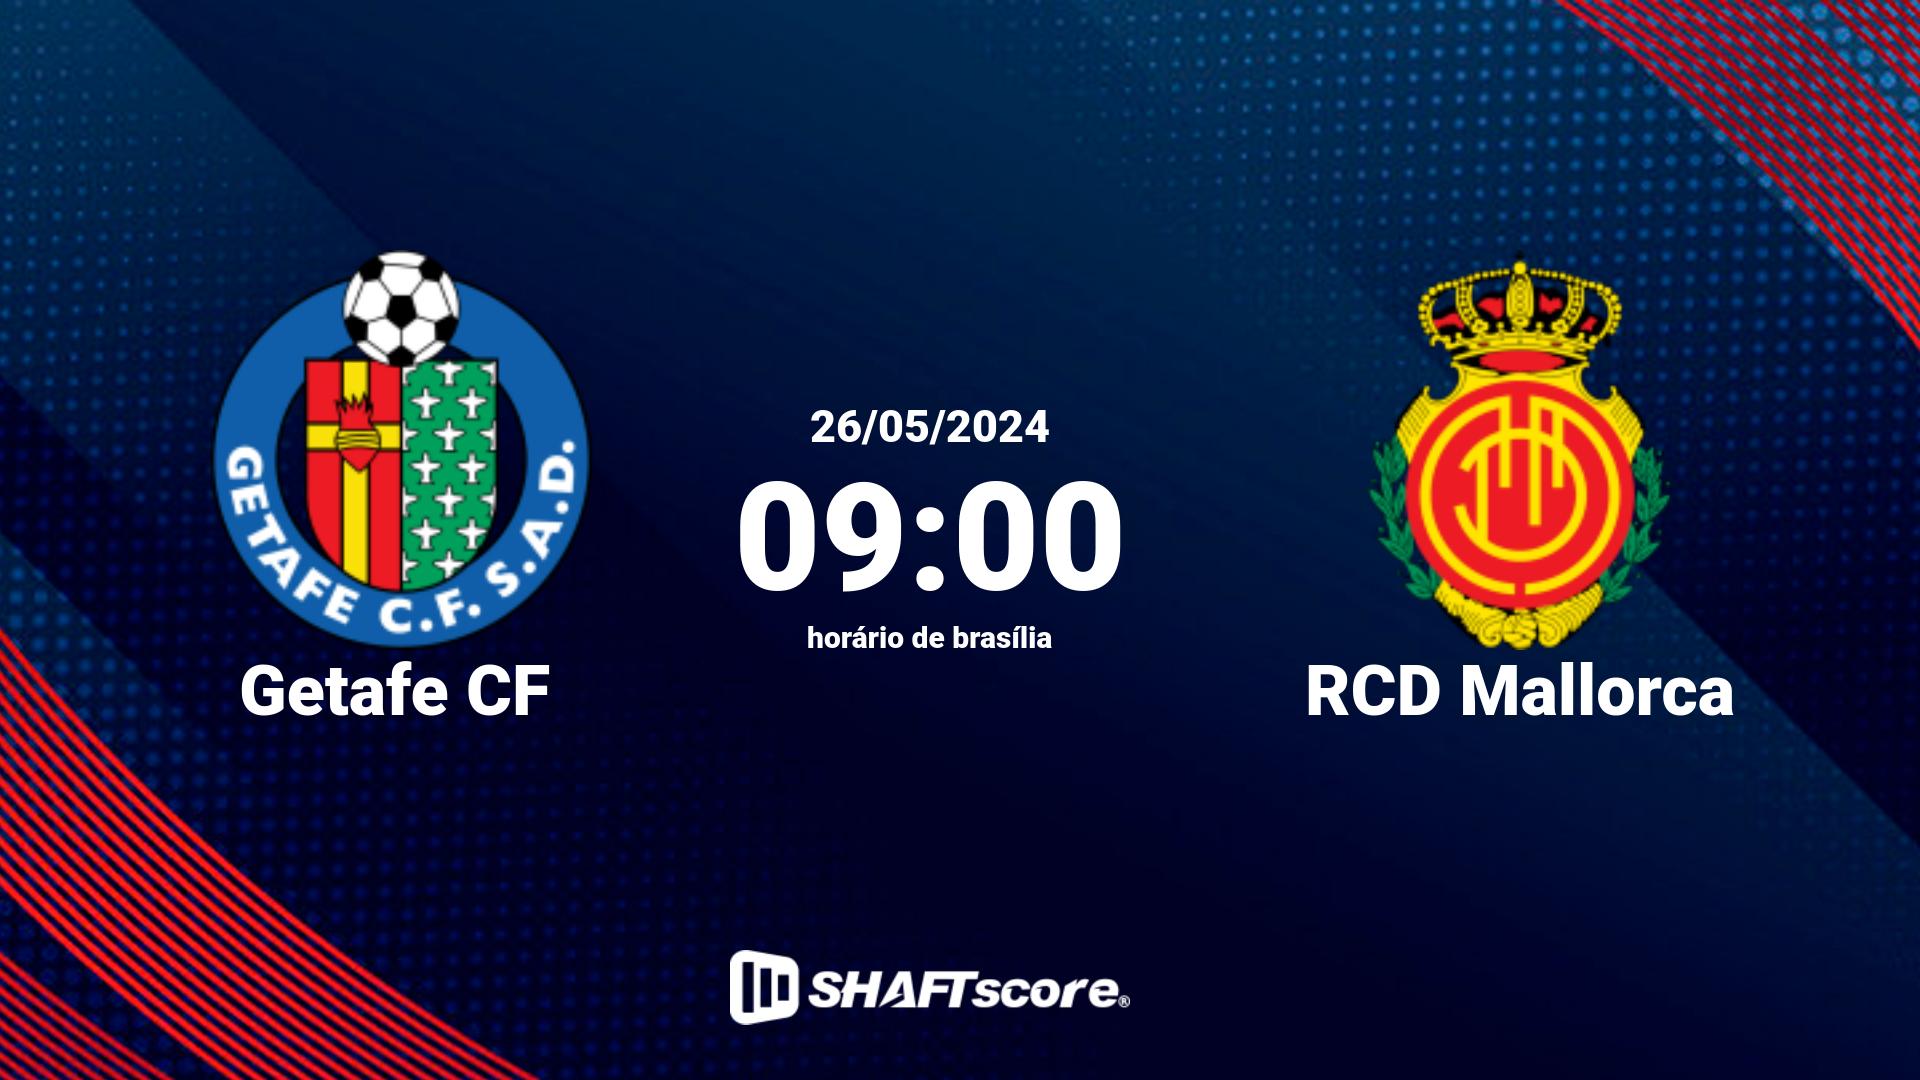 Estatísticas do jogo Getafe CF vs RCD Mallorca 26.05 09:00